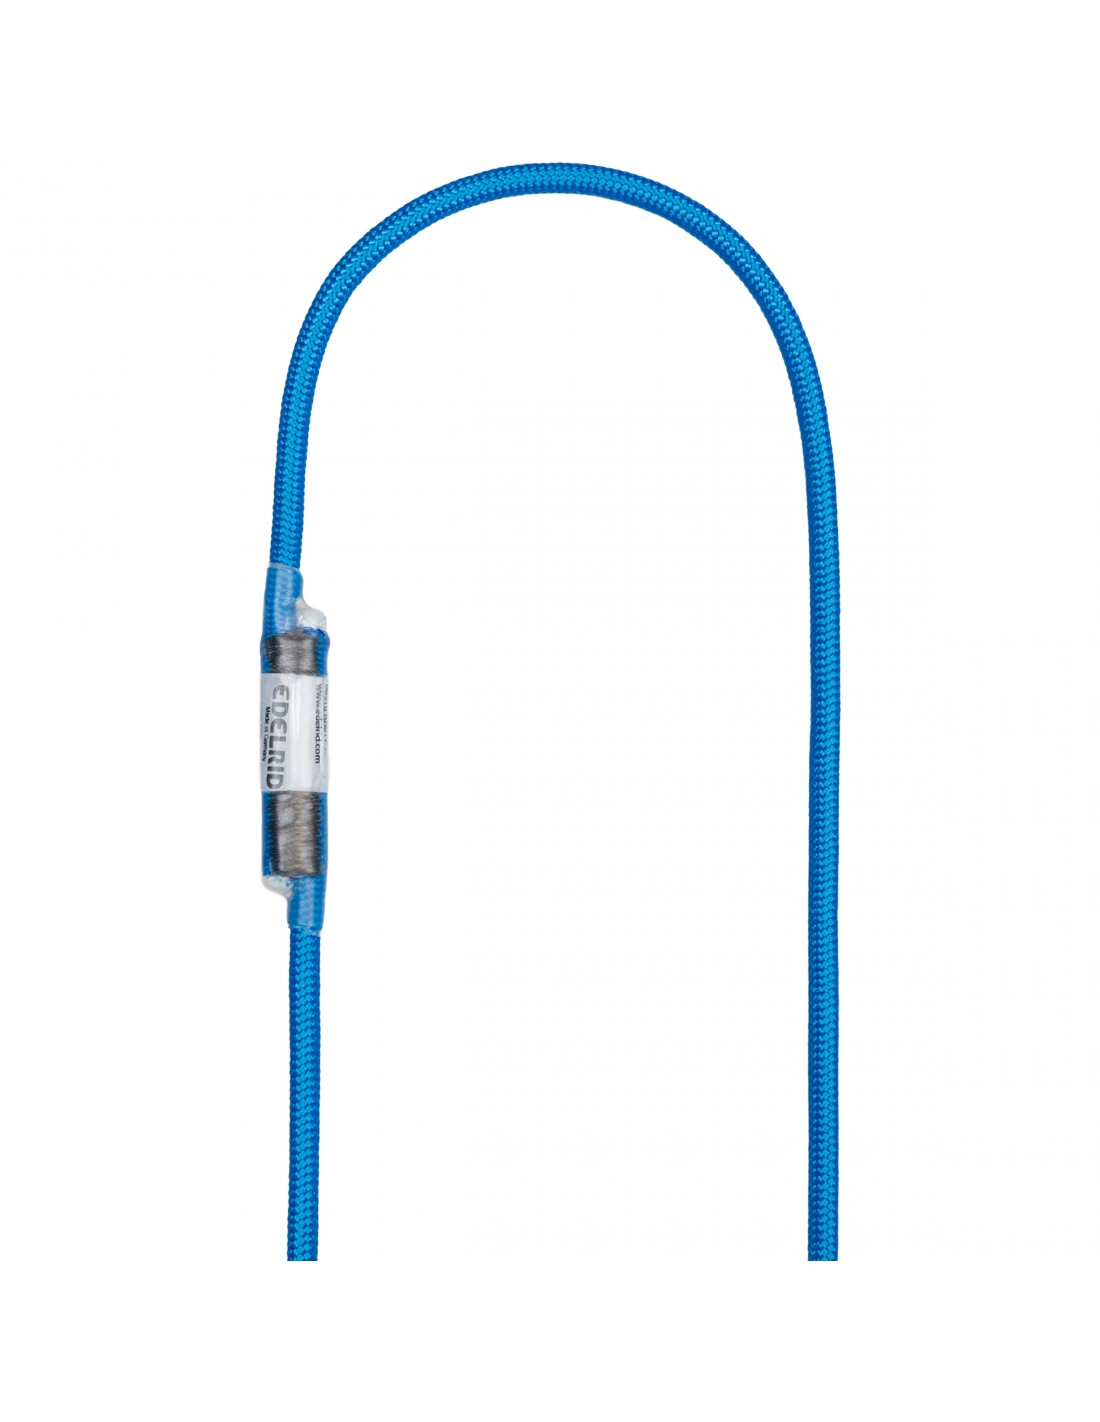 Edelrid HMPE Cord Sling 6mm, 40cm, blau Bandart - Reepschnur / Rundschlinge, Bandbreite - 6 mm, Bandlänge - 40 cm, von Edelrid